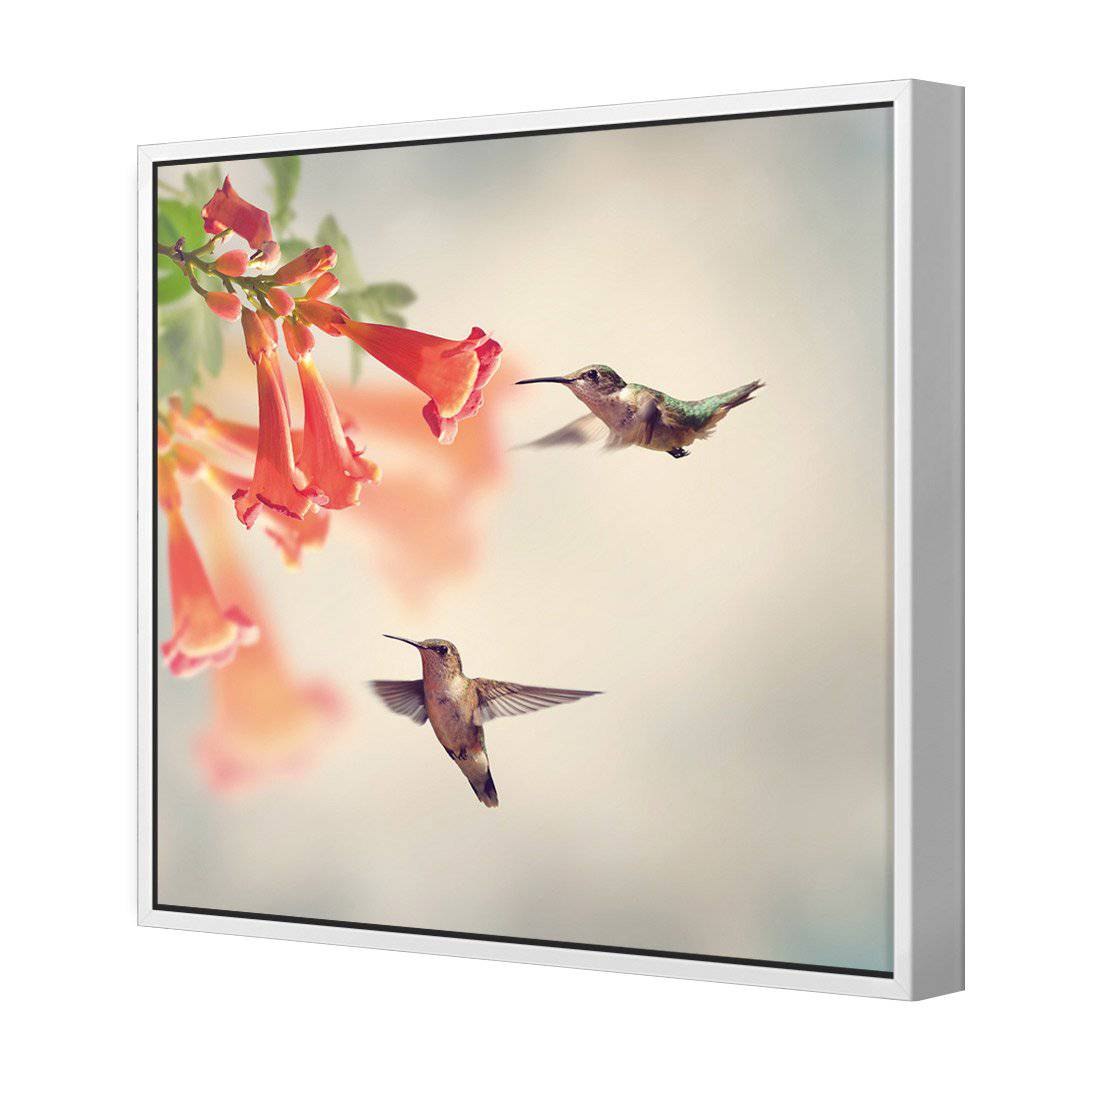 Hummingbird Hover Canvas Art-Canvas-Wall Art Designs-30x30cm-Canvas - White Frame-Wall Art Designs